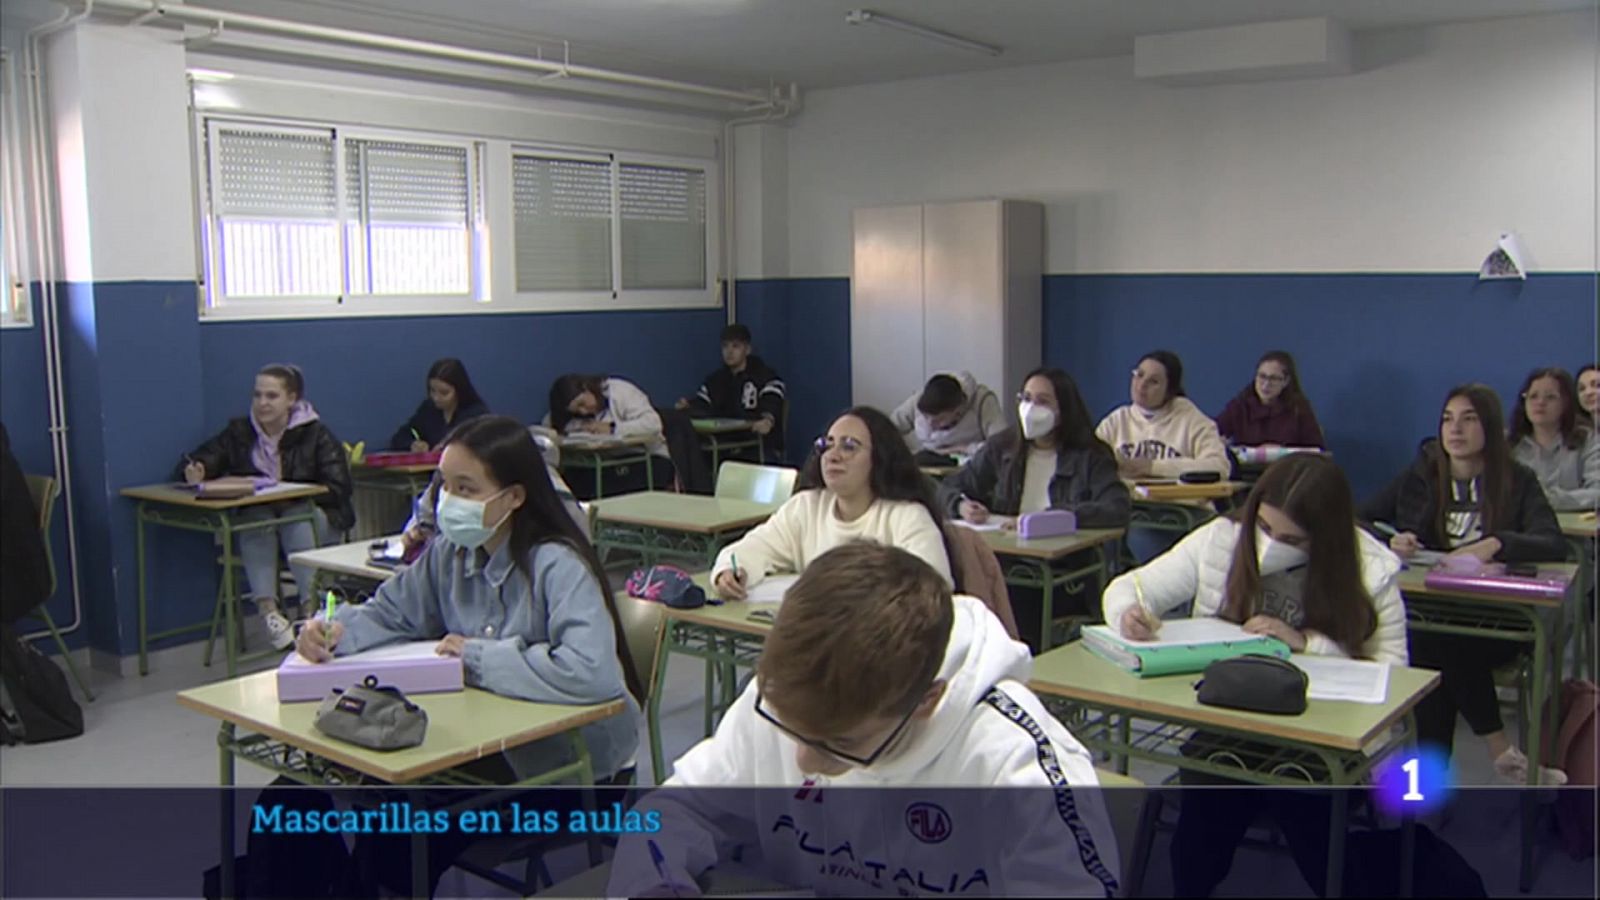 La mascarilla ya no es obligatoria en la aulas - RTVE.es